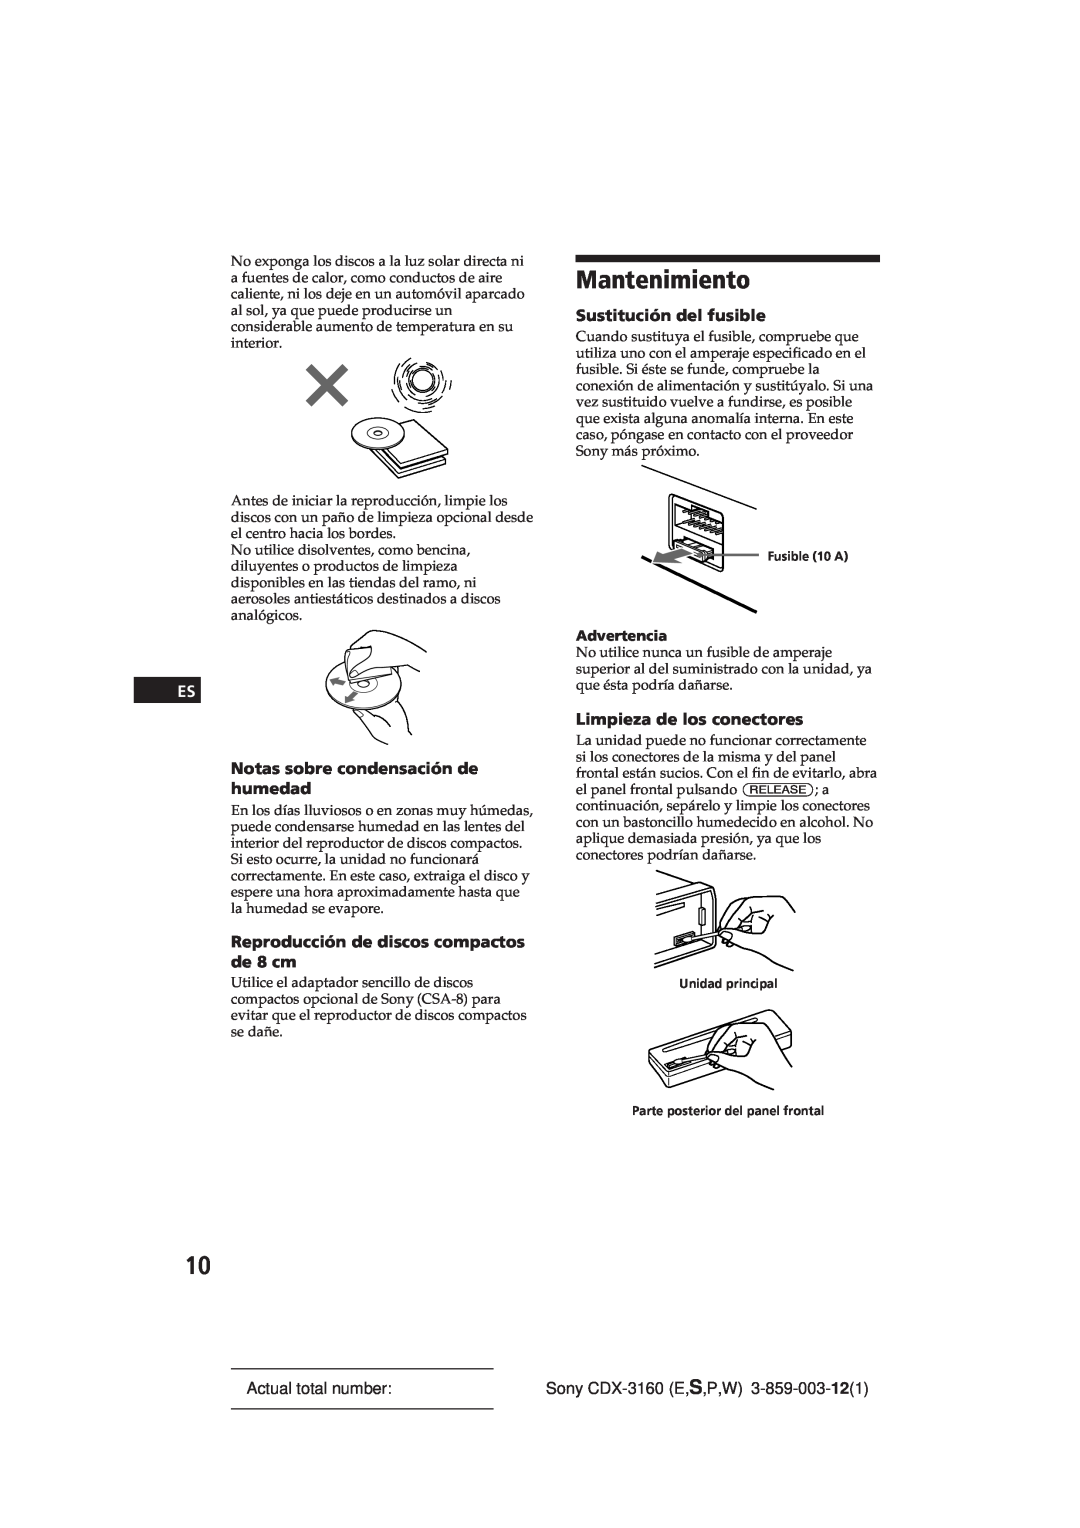 Sony CDX-3160 manual Mantenimiento, Notas sobre condensación de humedad, Reproducción de discos compactos de 8 cm 